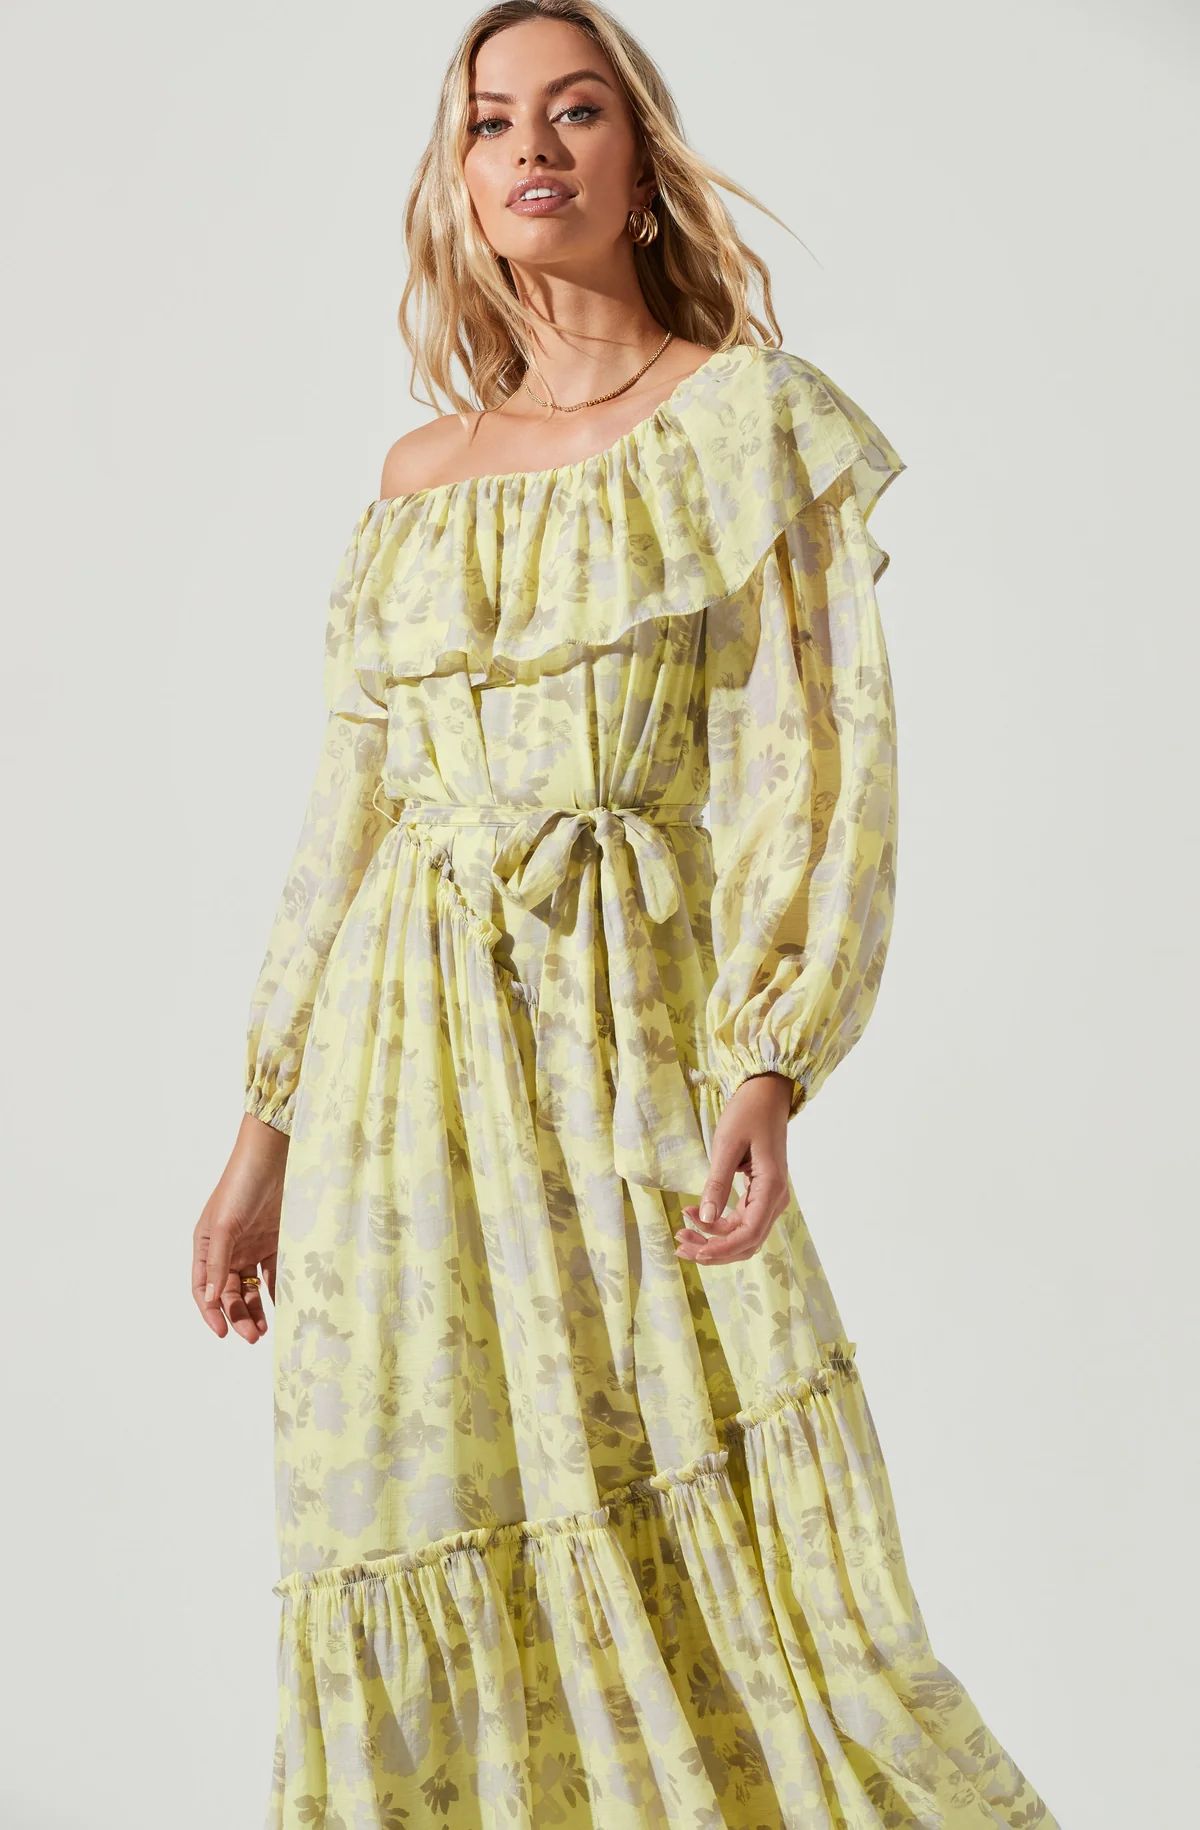 Kaylani Floral Off Shoulder Long Sleeve Midi Dress | ASTR The Label (US)